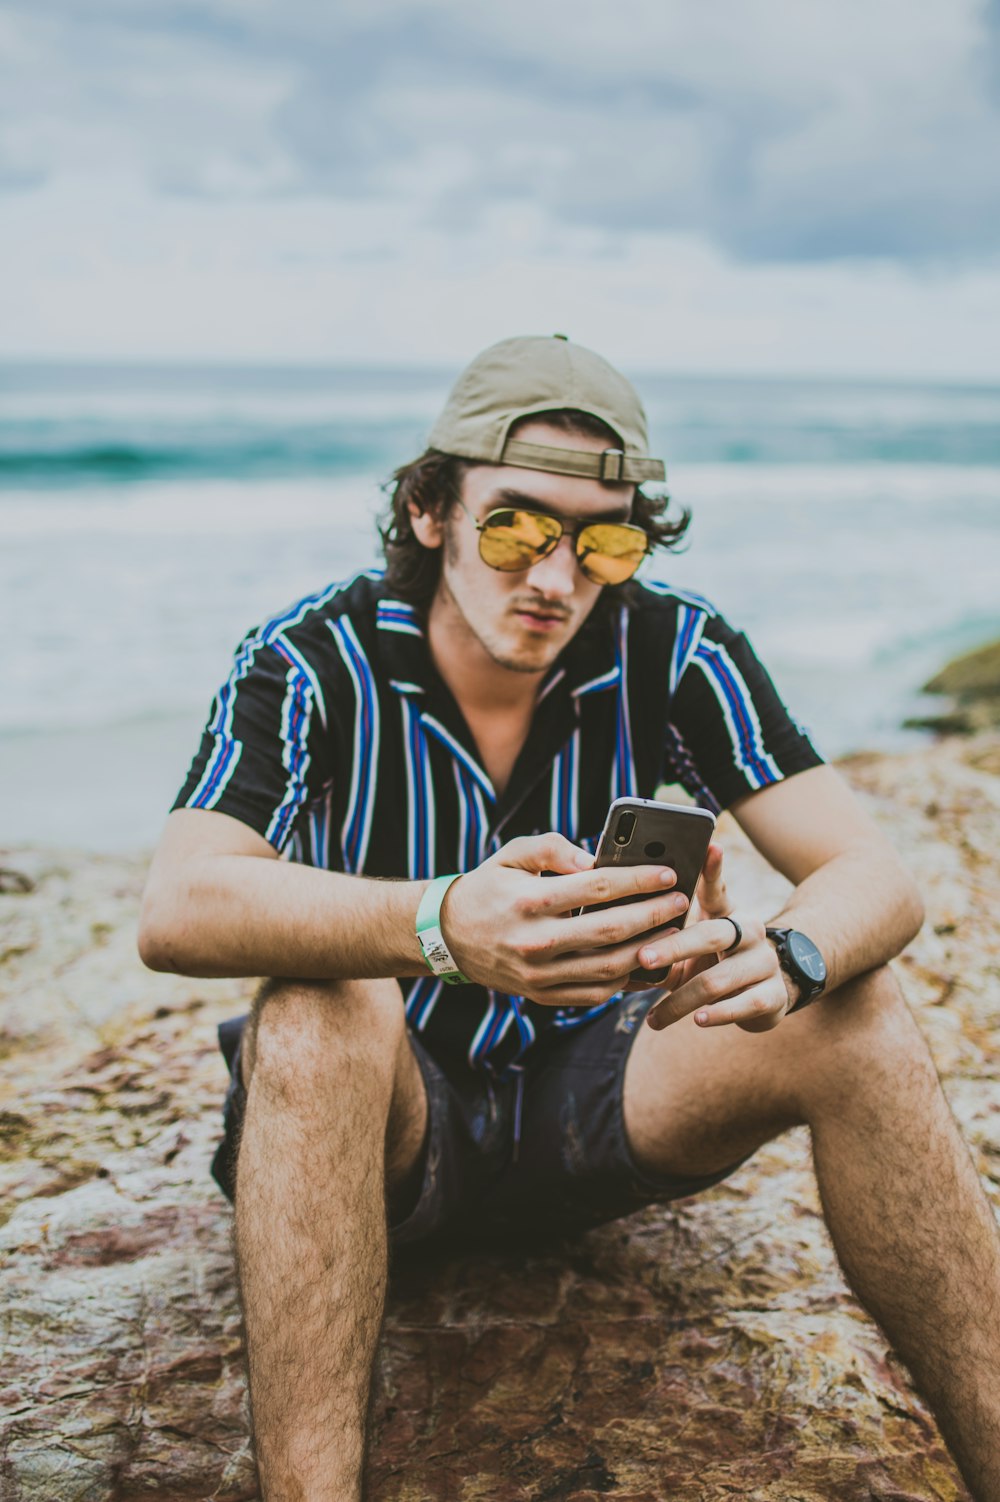 모래 위에 앉아서 스마트폰을 들고 있는 남자